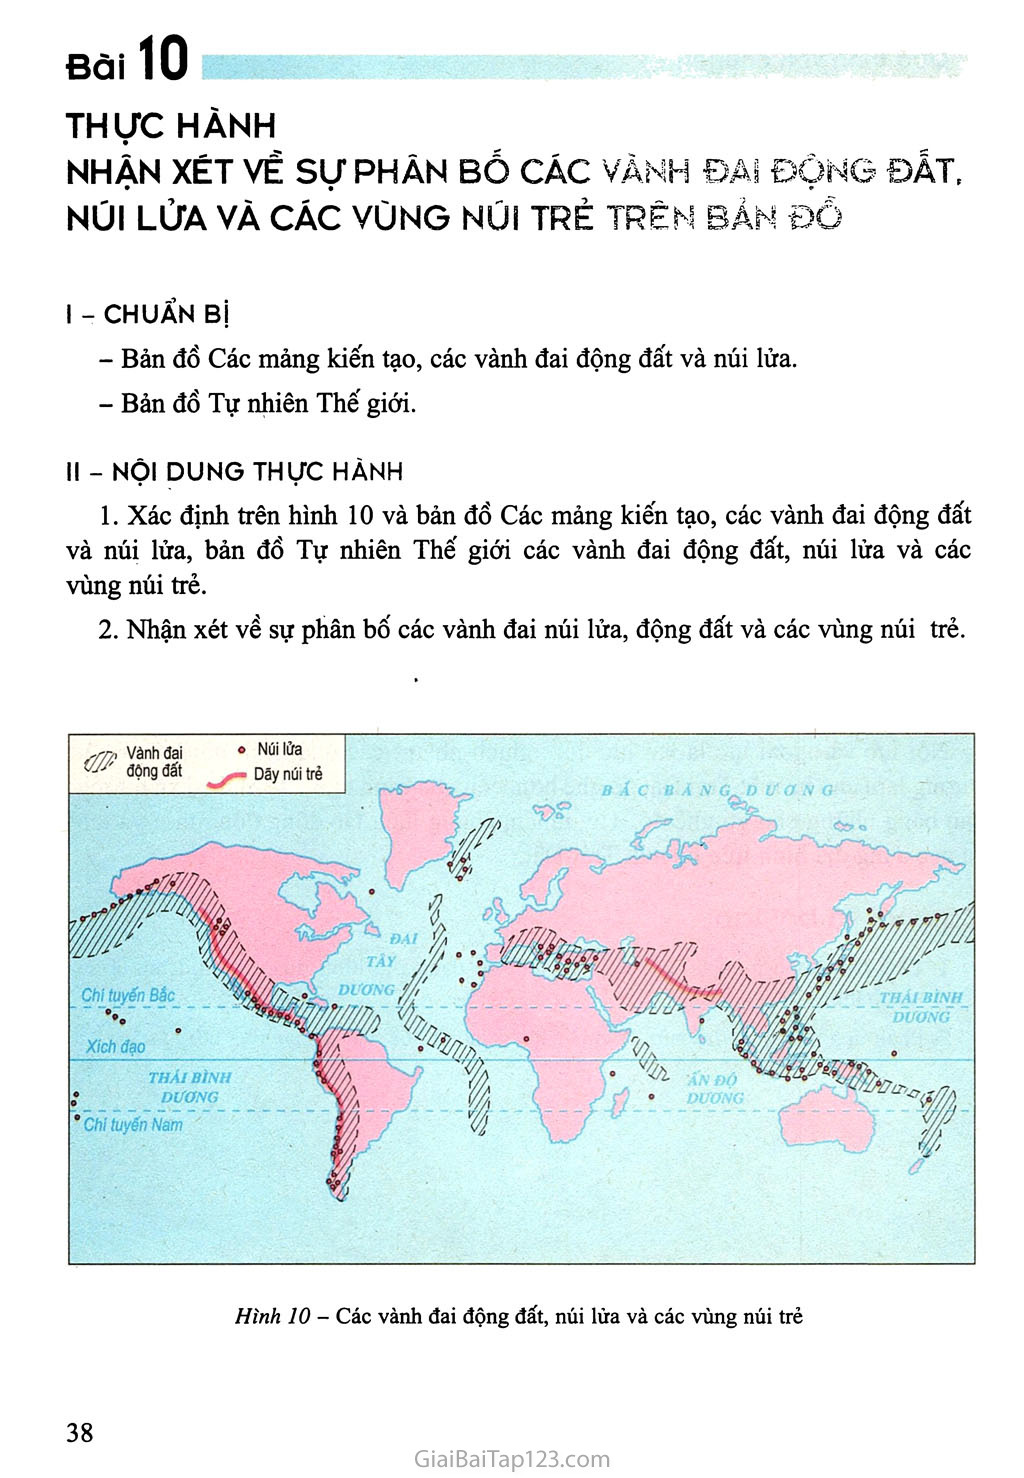 Bài 10. Thực hành: Nhận xét về sự phân bố các vành đai động đất, núi lửa và các vùng núi trẻ trên bản đồ trang 1